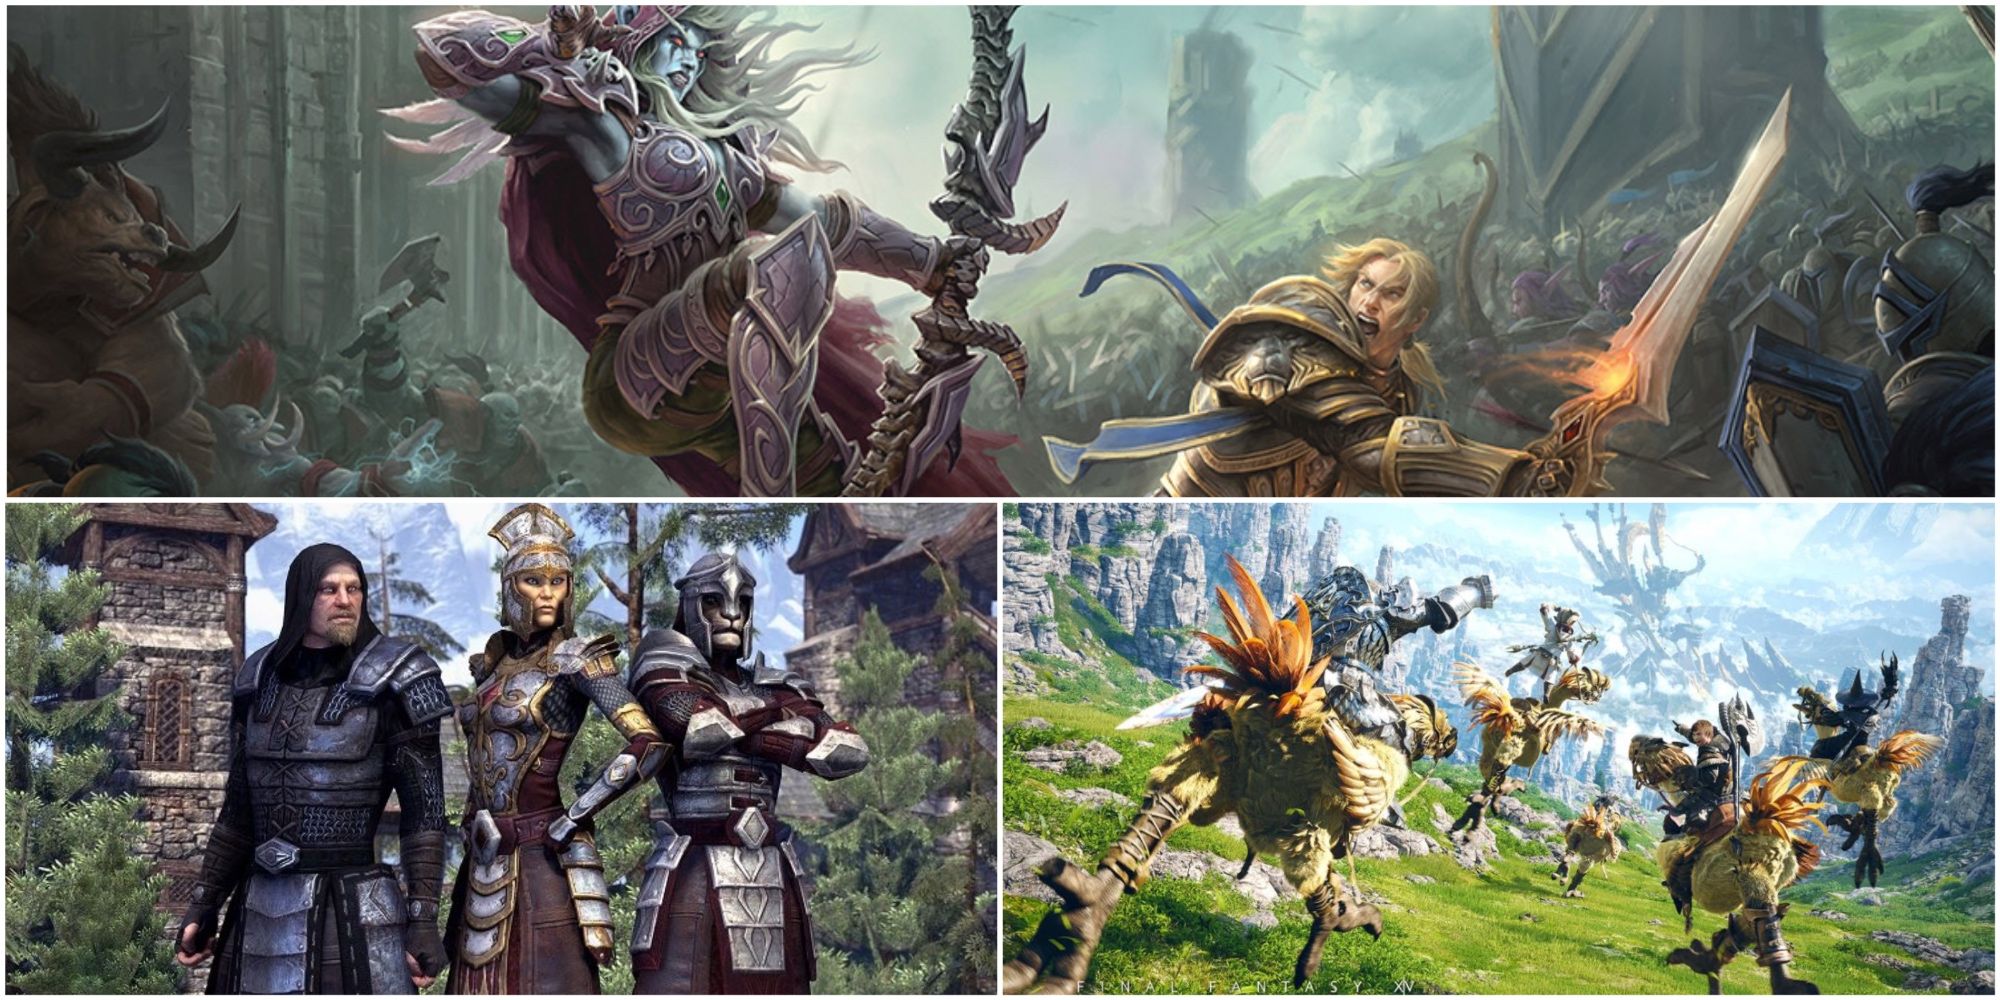 Split image showing Final Fantasy 14, World of Warcraft, and Elder Scrolls Online.